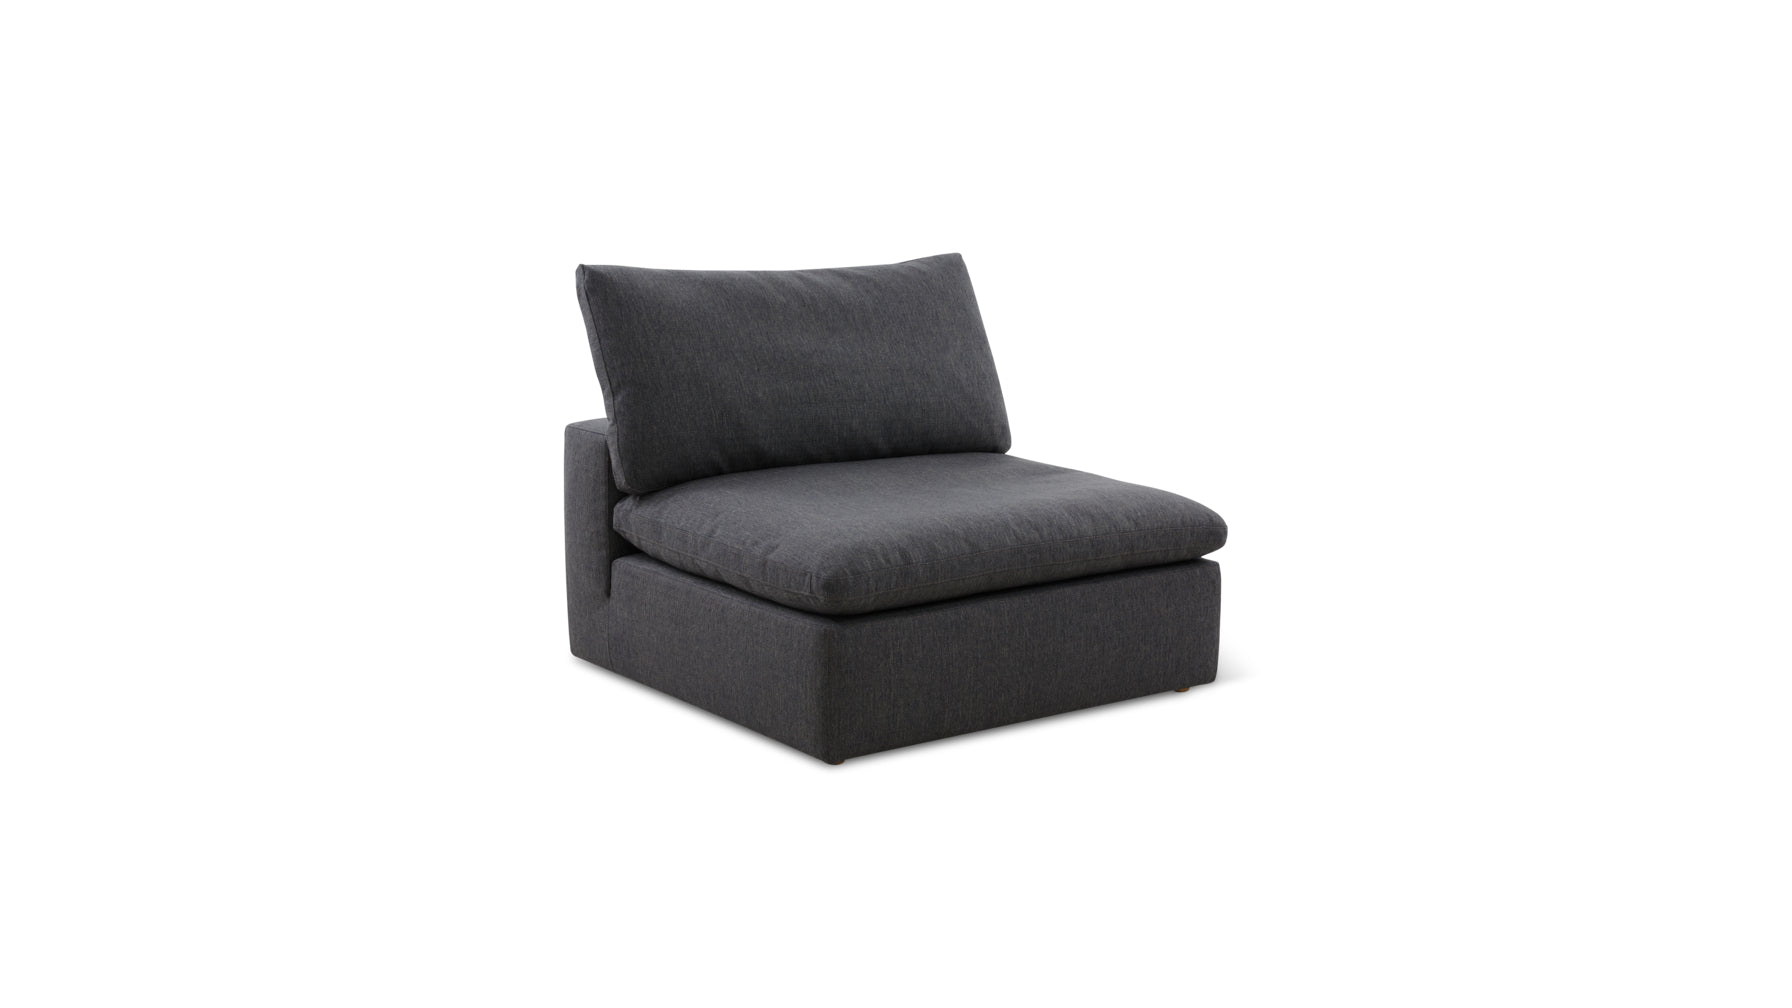 Movie Night™ Armless Chair, Standard, Dark Shadow - Image 2